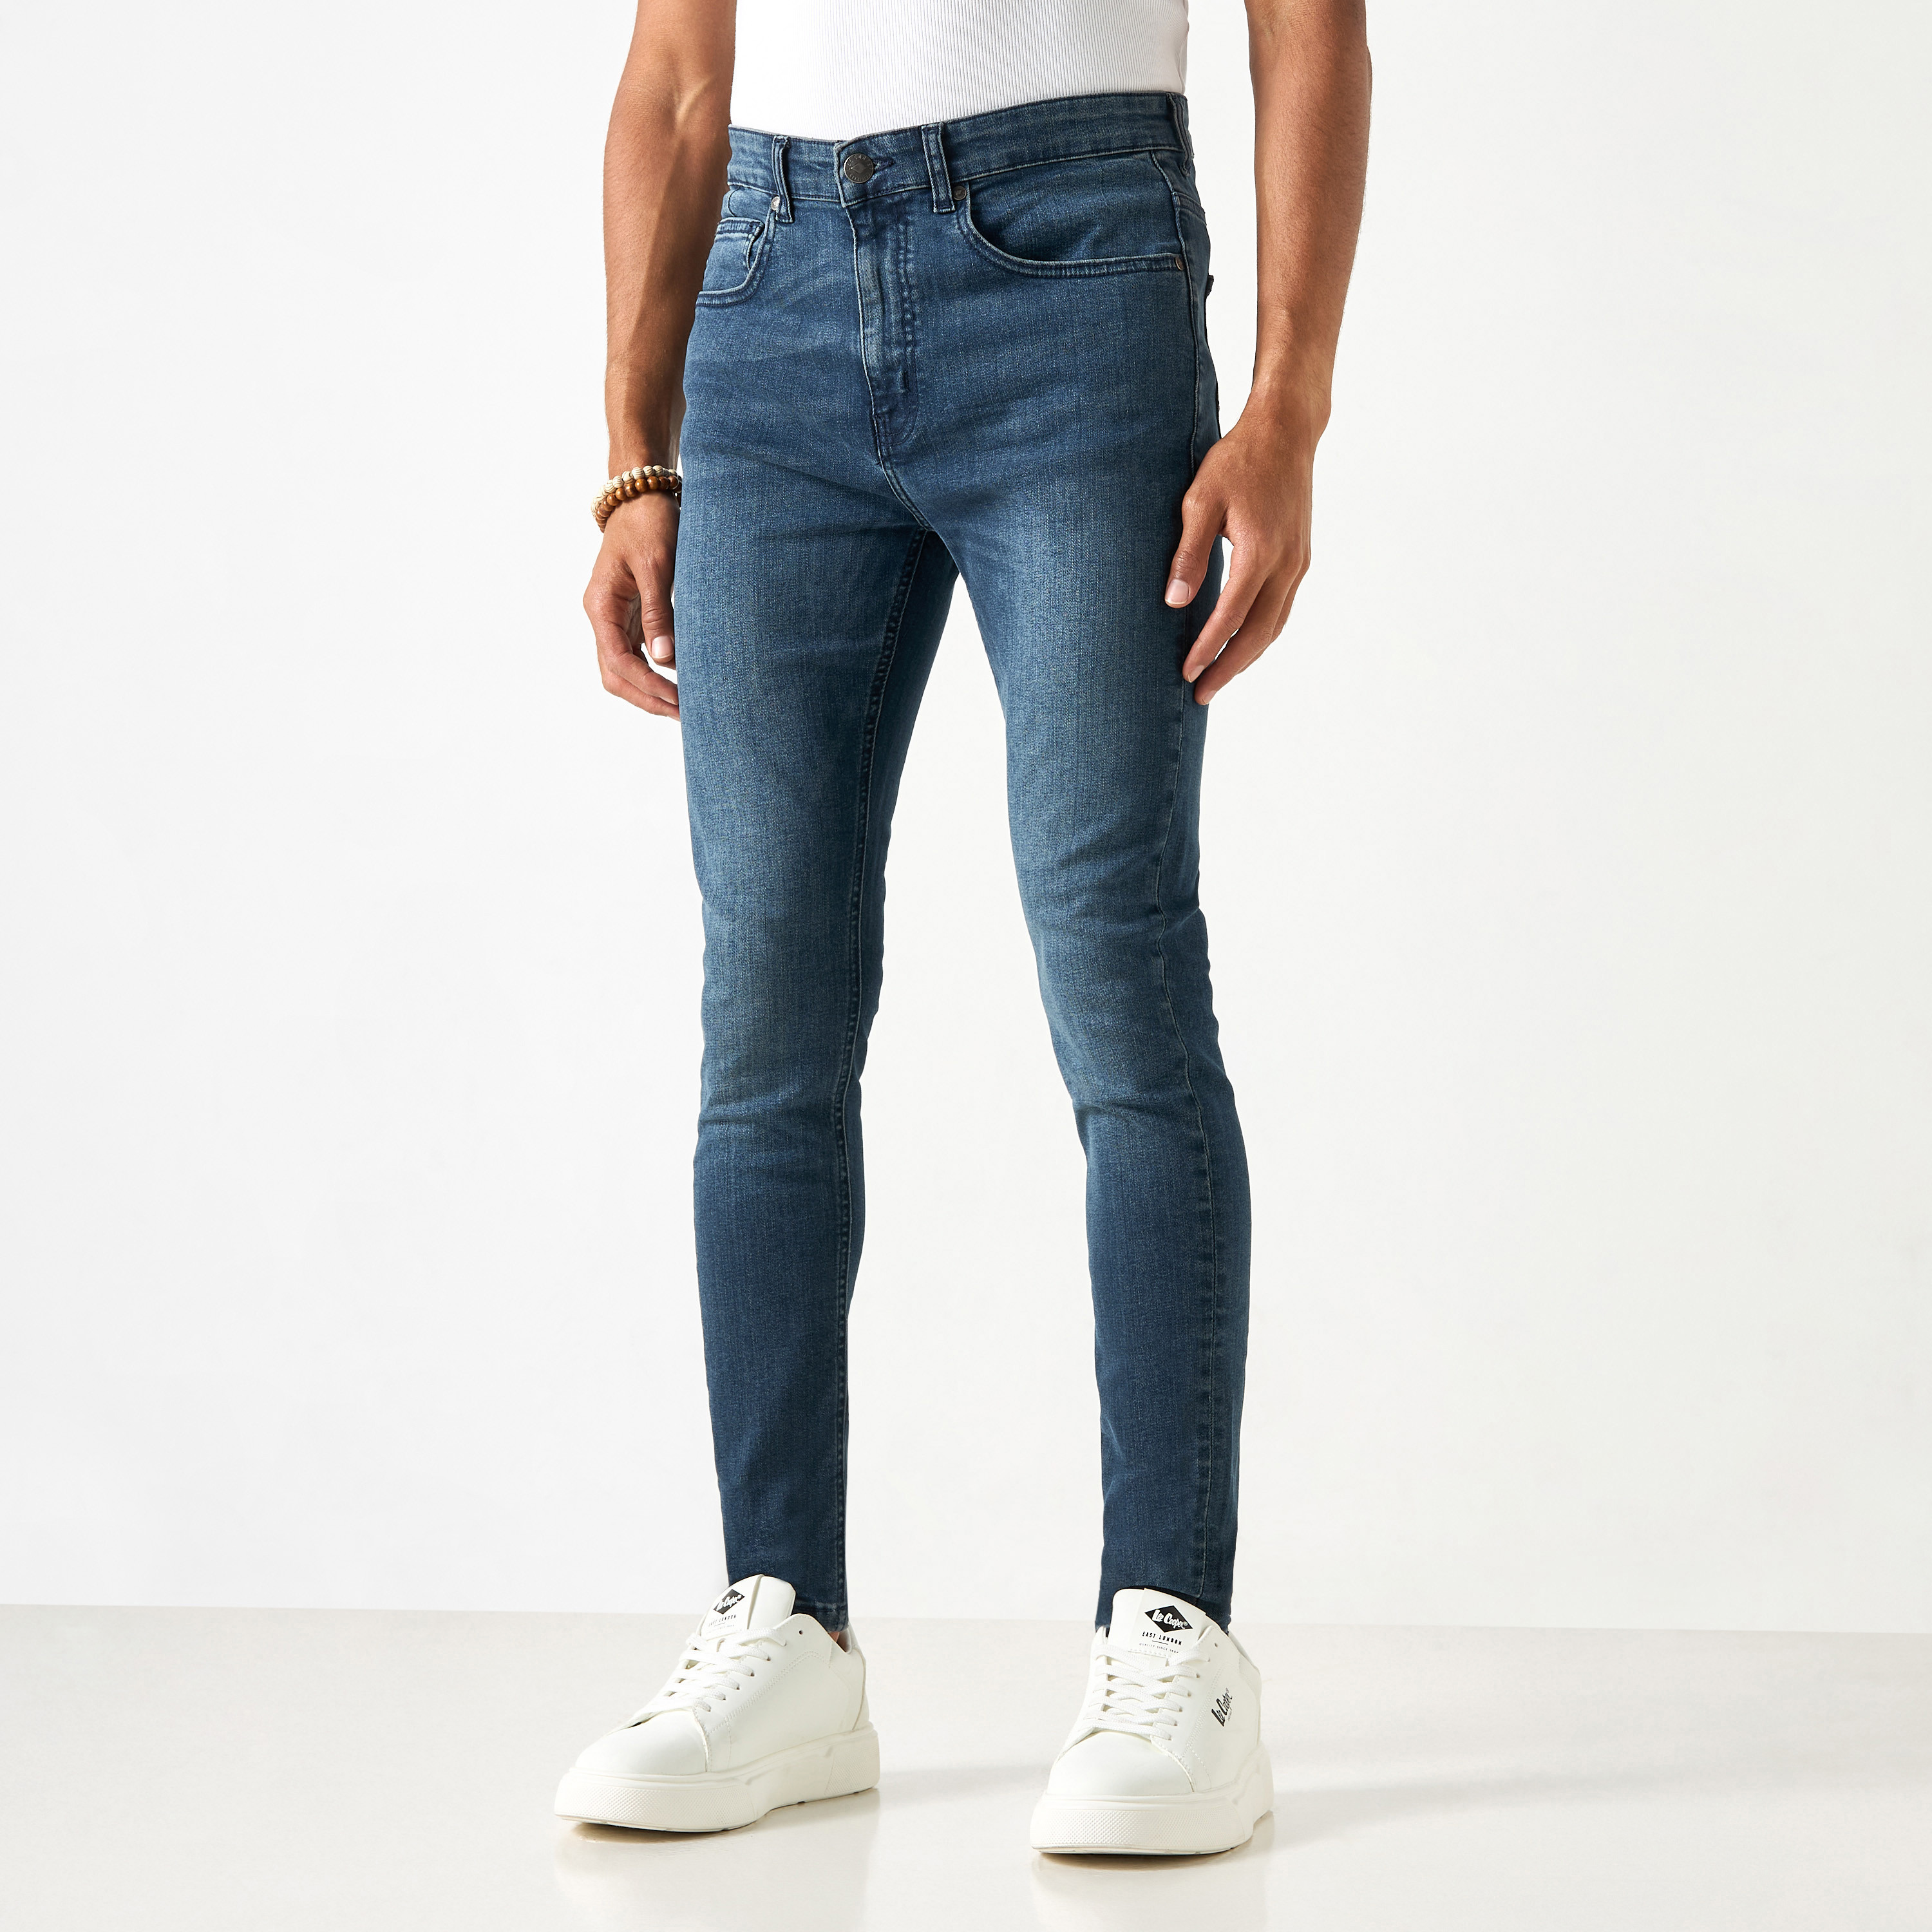 Harem Pents|men's Cotton Cargo Joggers - Hip Hop Streetwear Harem Pants